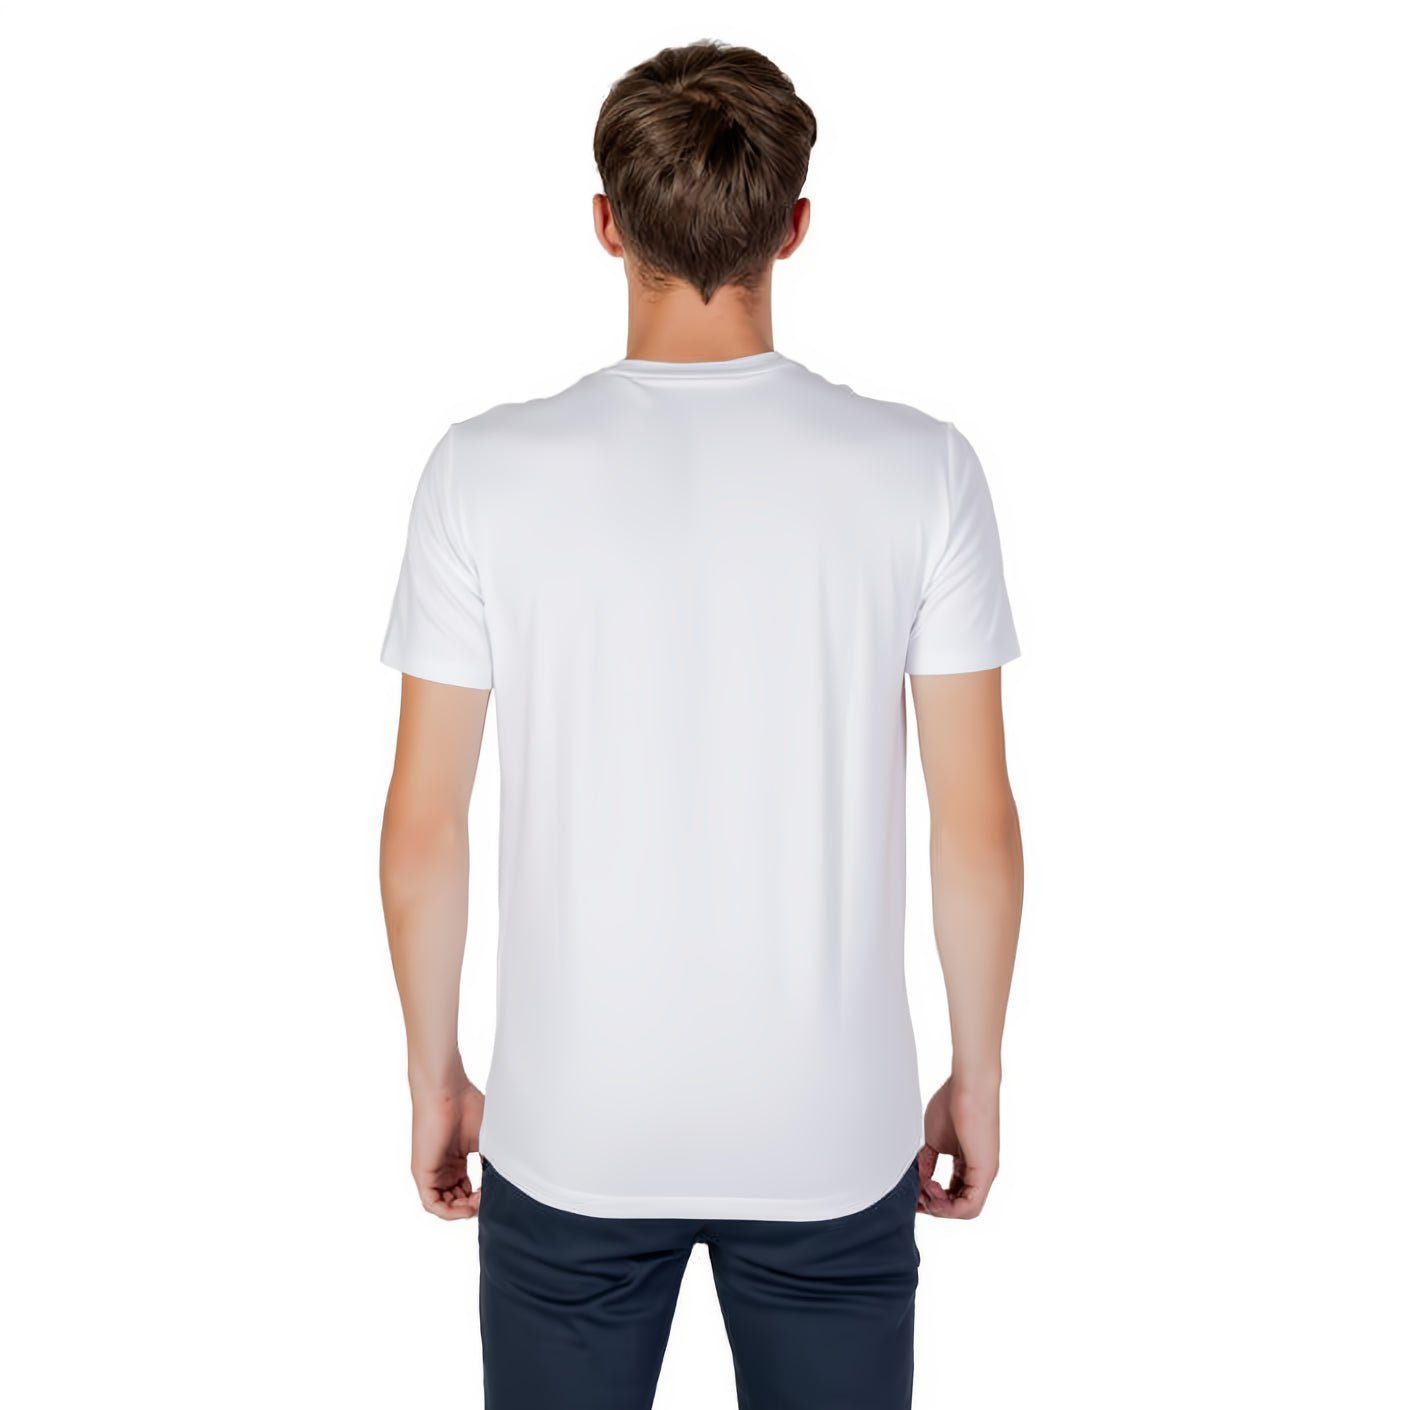 ARMANI EXCHANGE T-Shirt kurzarm, Rundhals, ein Ihre für Kleidungskollektion! Must-Have